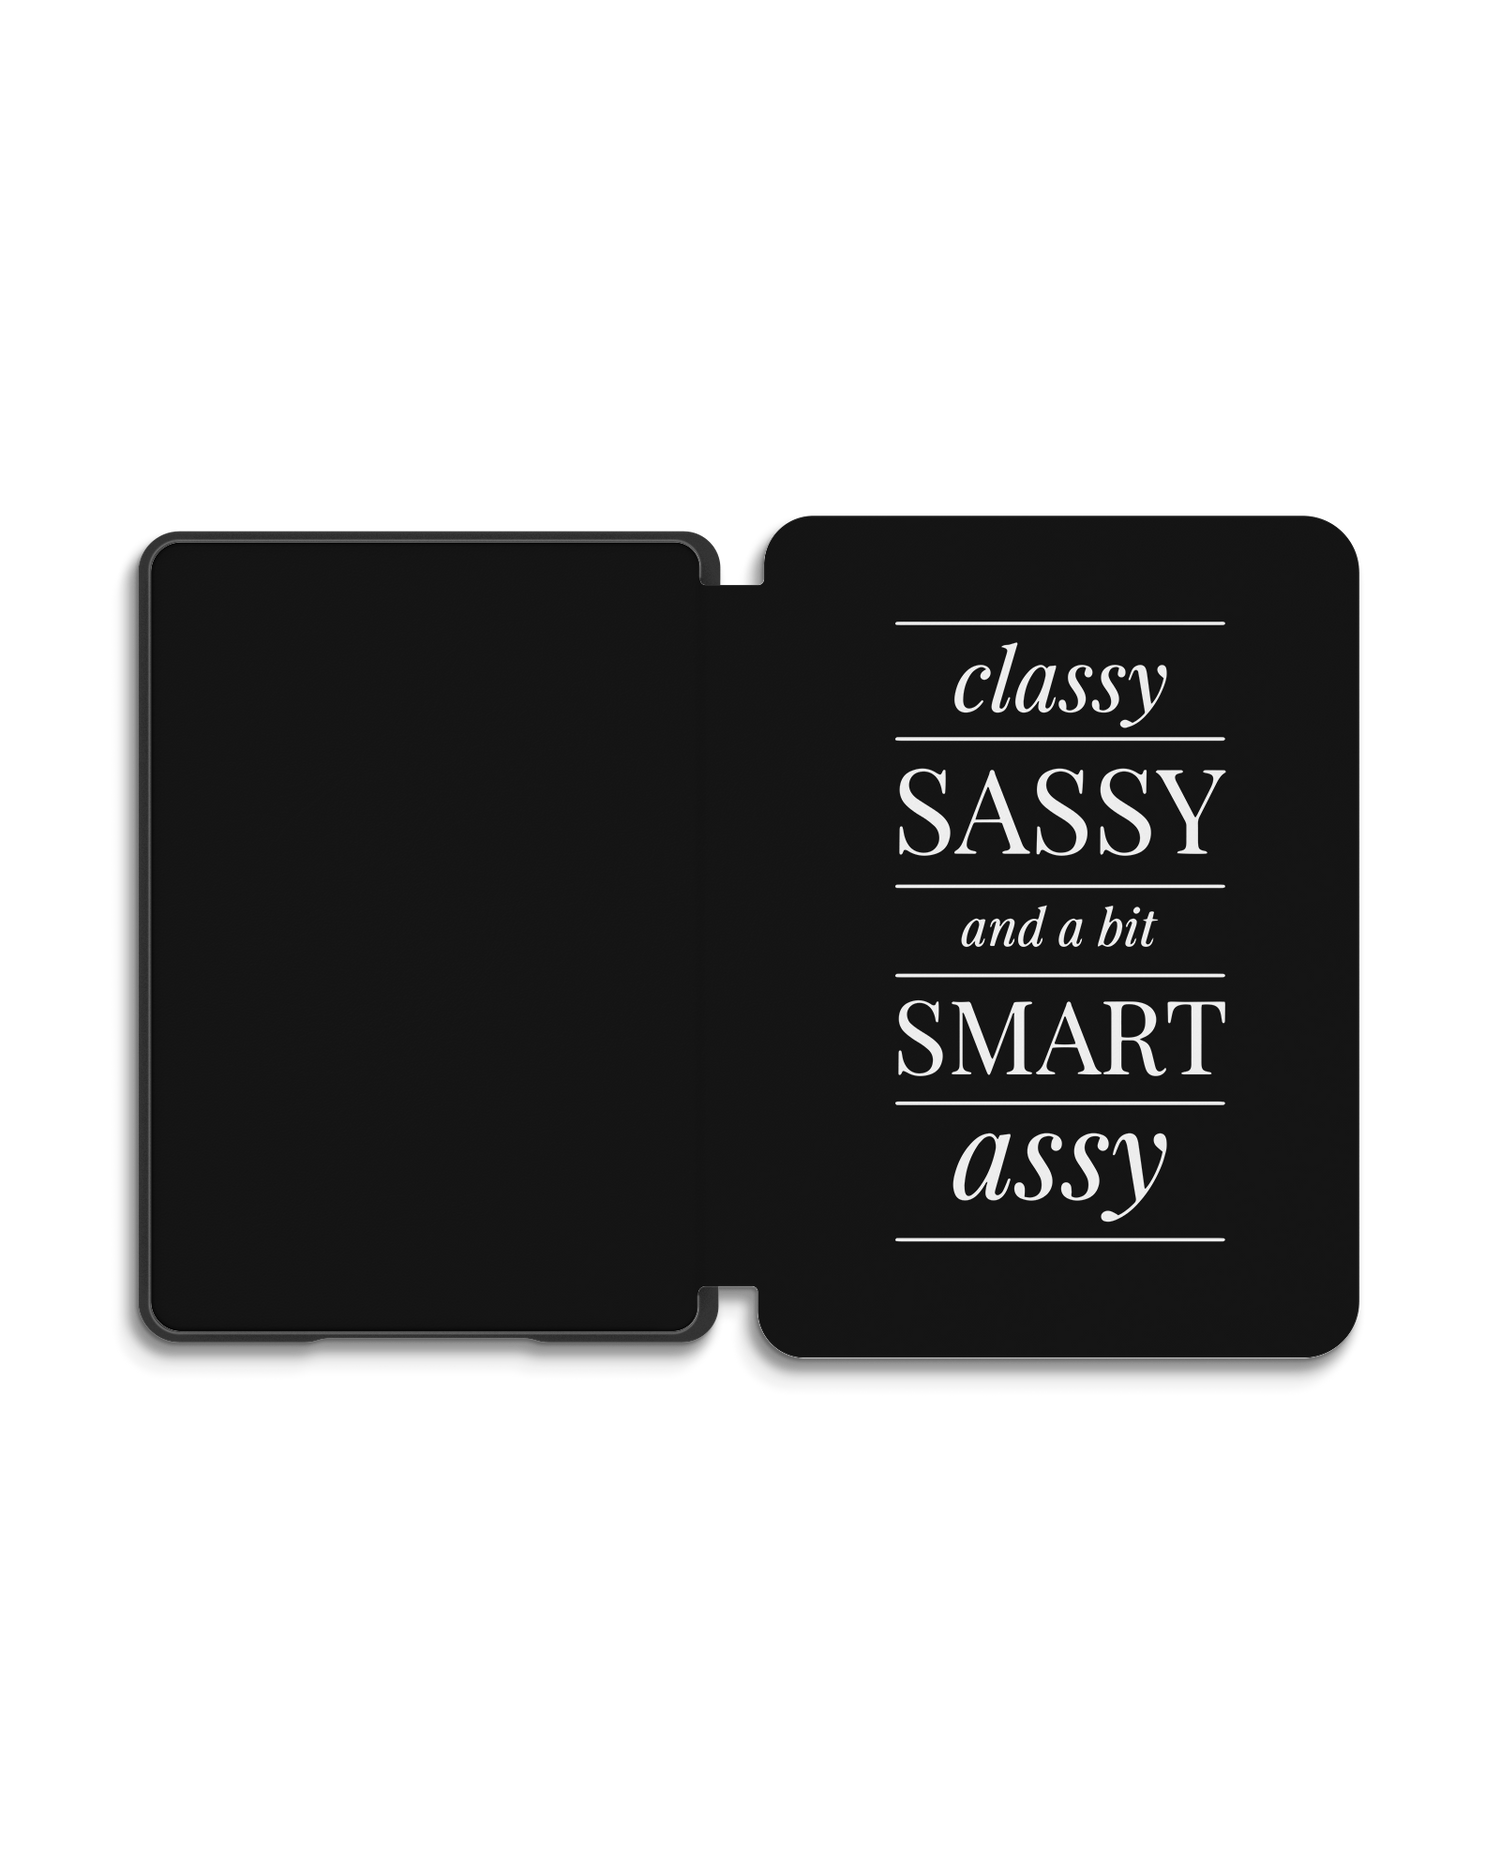 Classy Sassy eBook Reader Smart Case für Amazon New Kindle (2019): Geöffnet Außenansicht